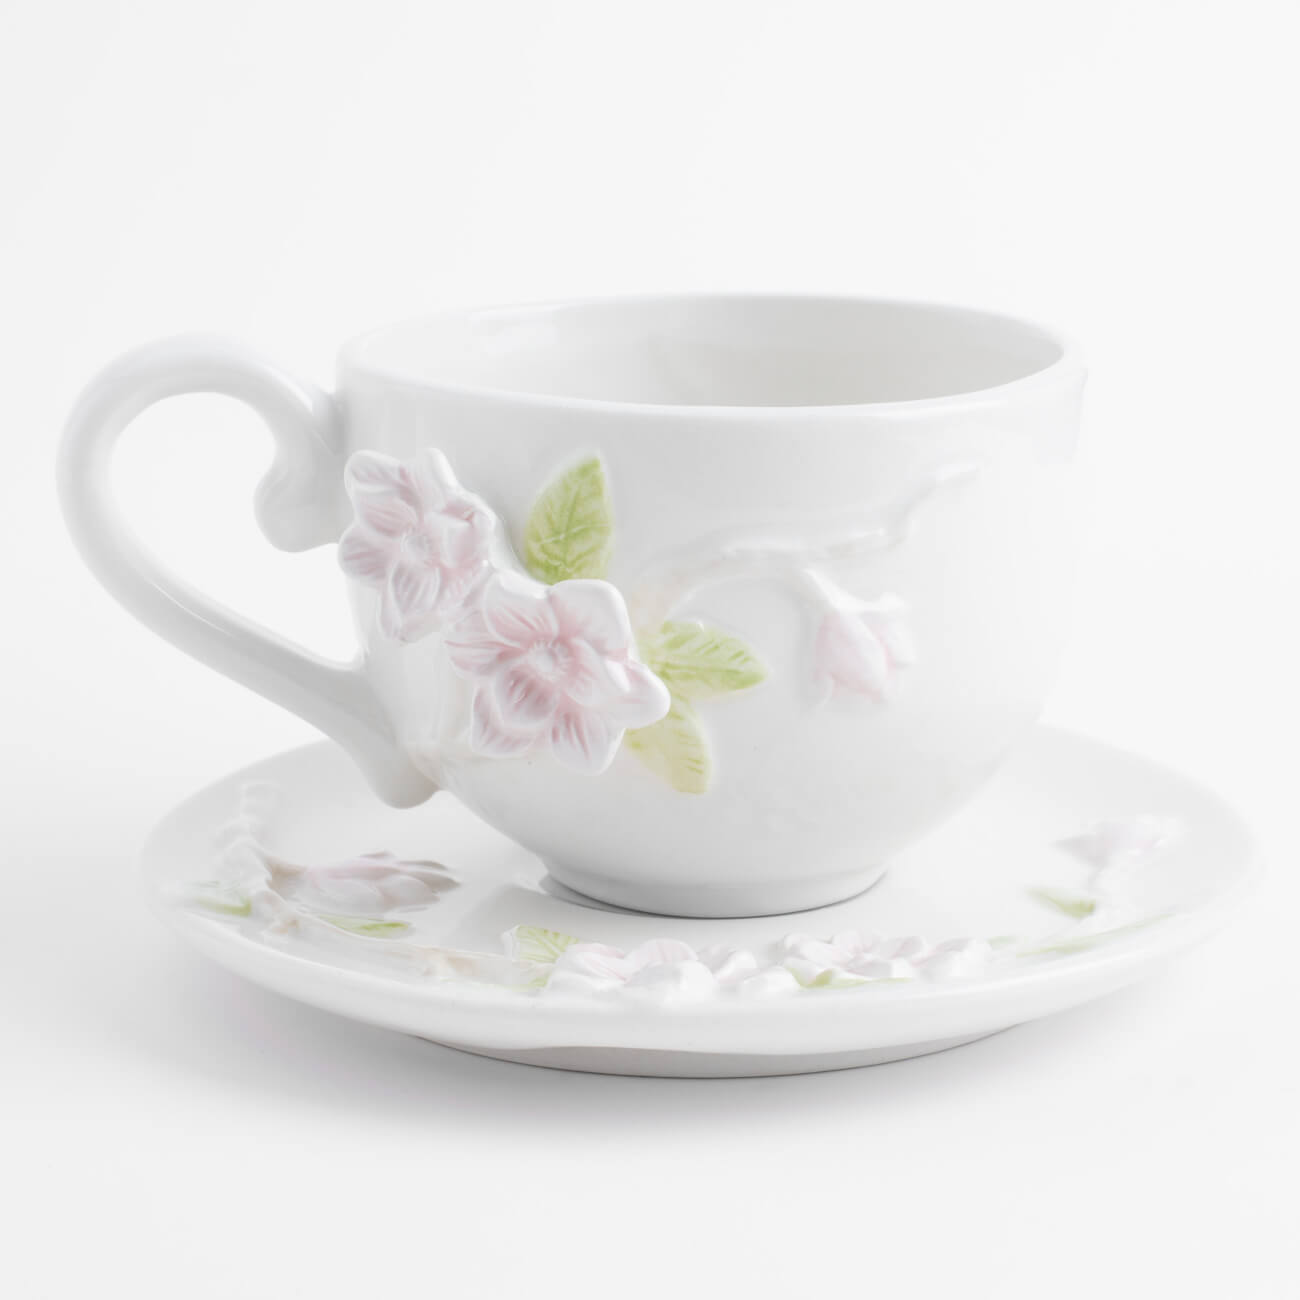 Пара чайная для завтрака, 1 перс, 2 пр, 420 мл, керамика, молочная, Цветы магнолии, Magnolia